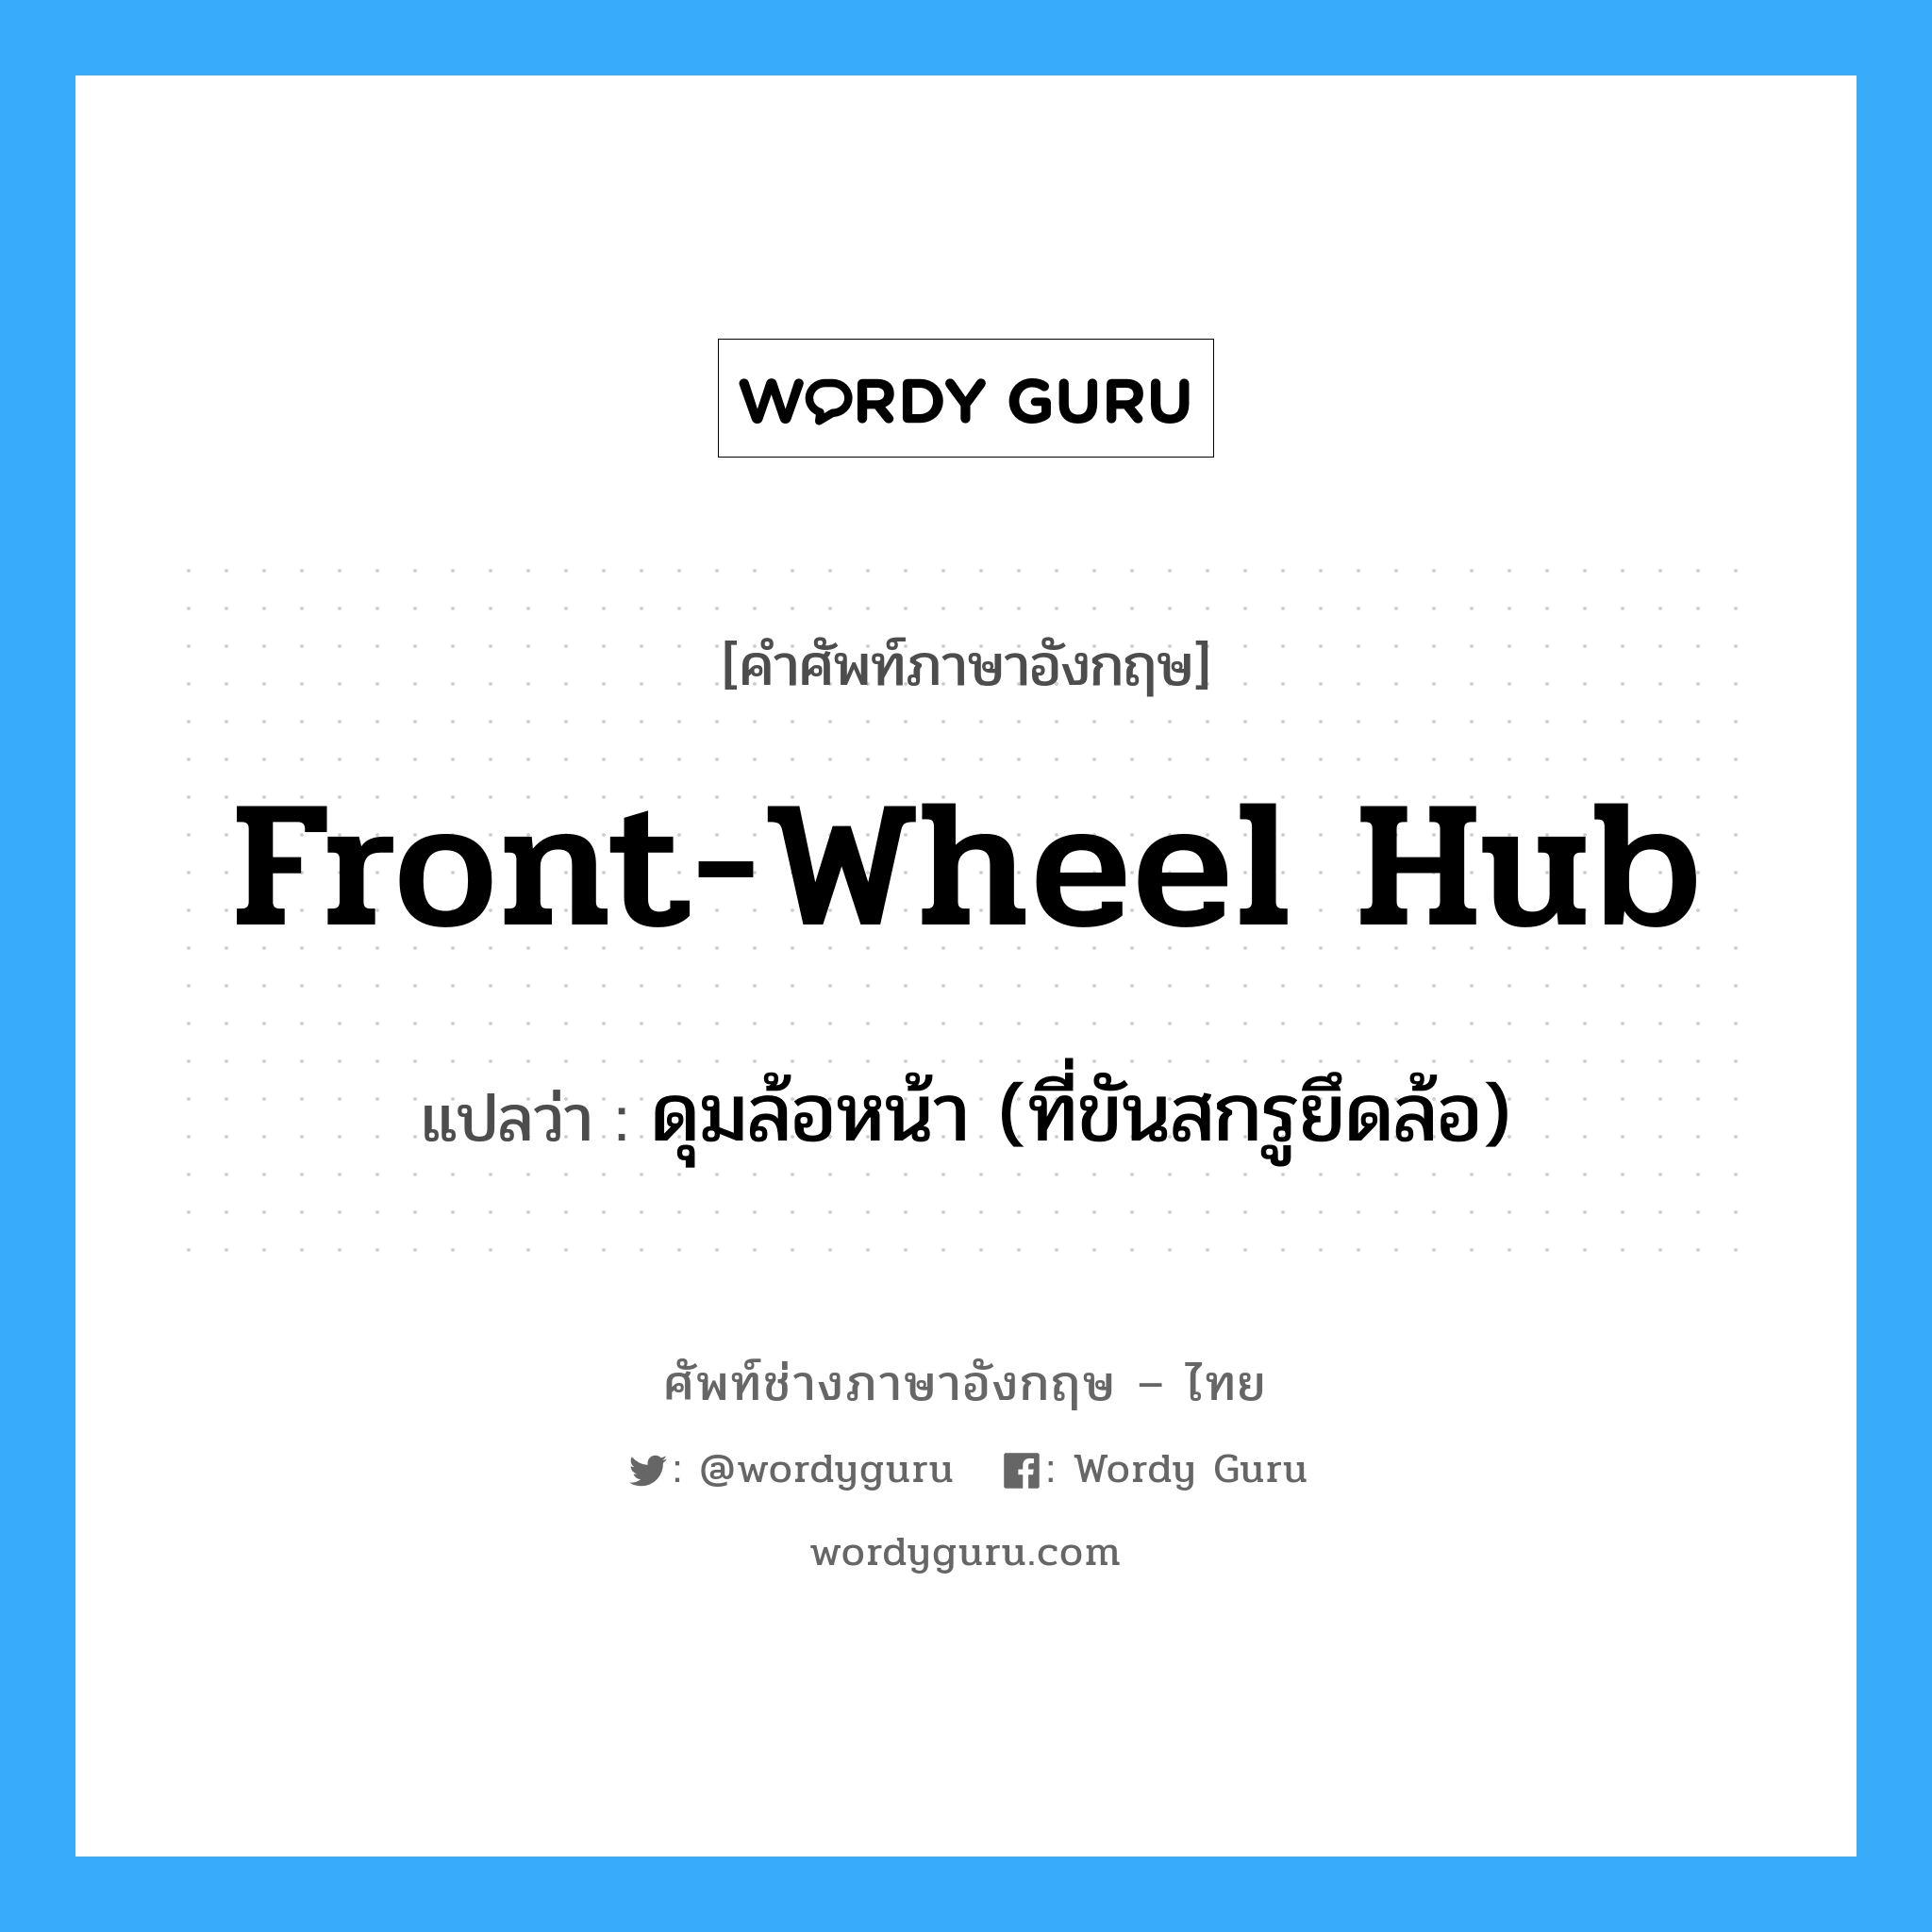 front-wheel hub แปลว่า?, คำศัพท์ช่างภาษาอังกฤษ - ไทย front-wheel hub คำศัพท์ภาษาอังกฤษ front-wheel hub แปลว่า ดุมล้อหน้า (ที่ขันสกรูยึดล้อ)